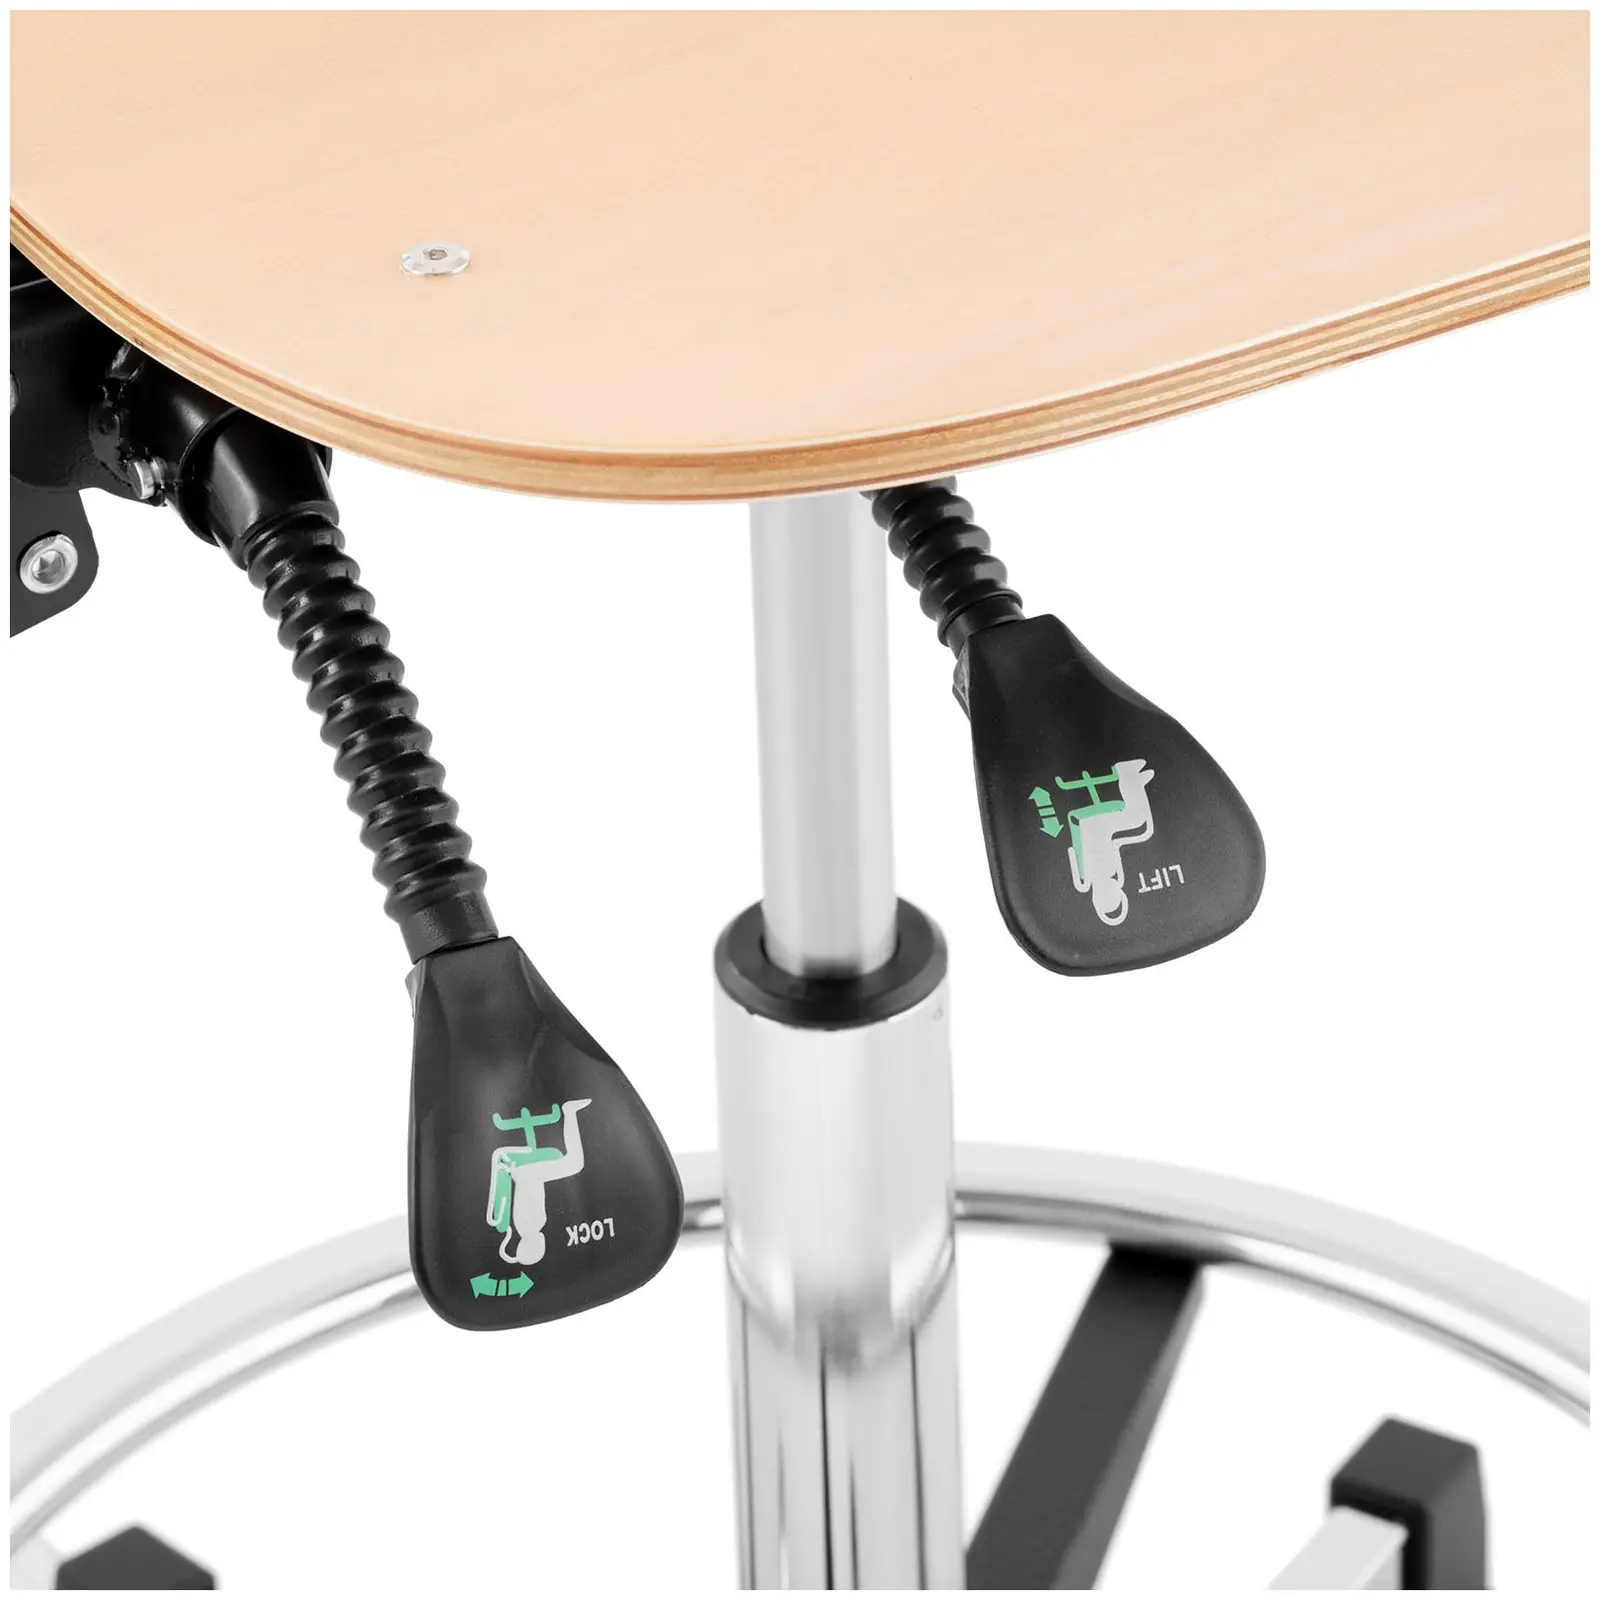 Стол за работилница - 120 кг - хром, дърво - ринг за крака - регулируема височина 550 - 800 мм